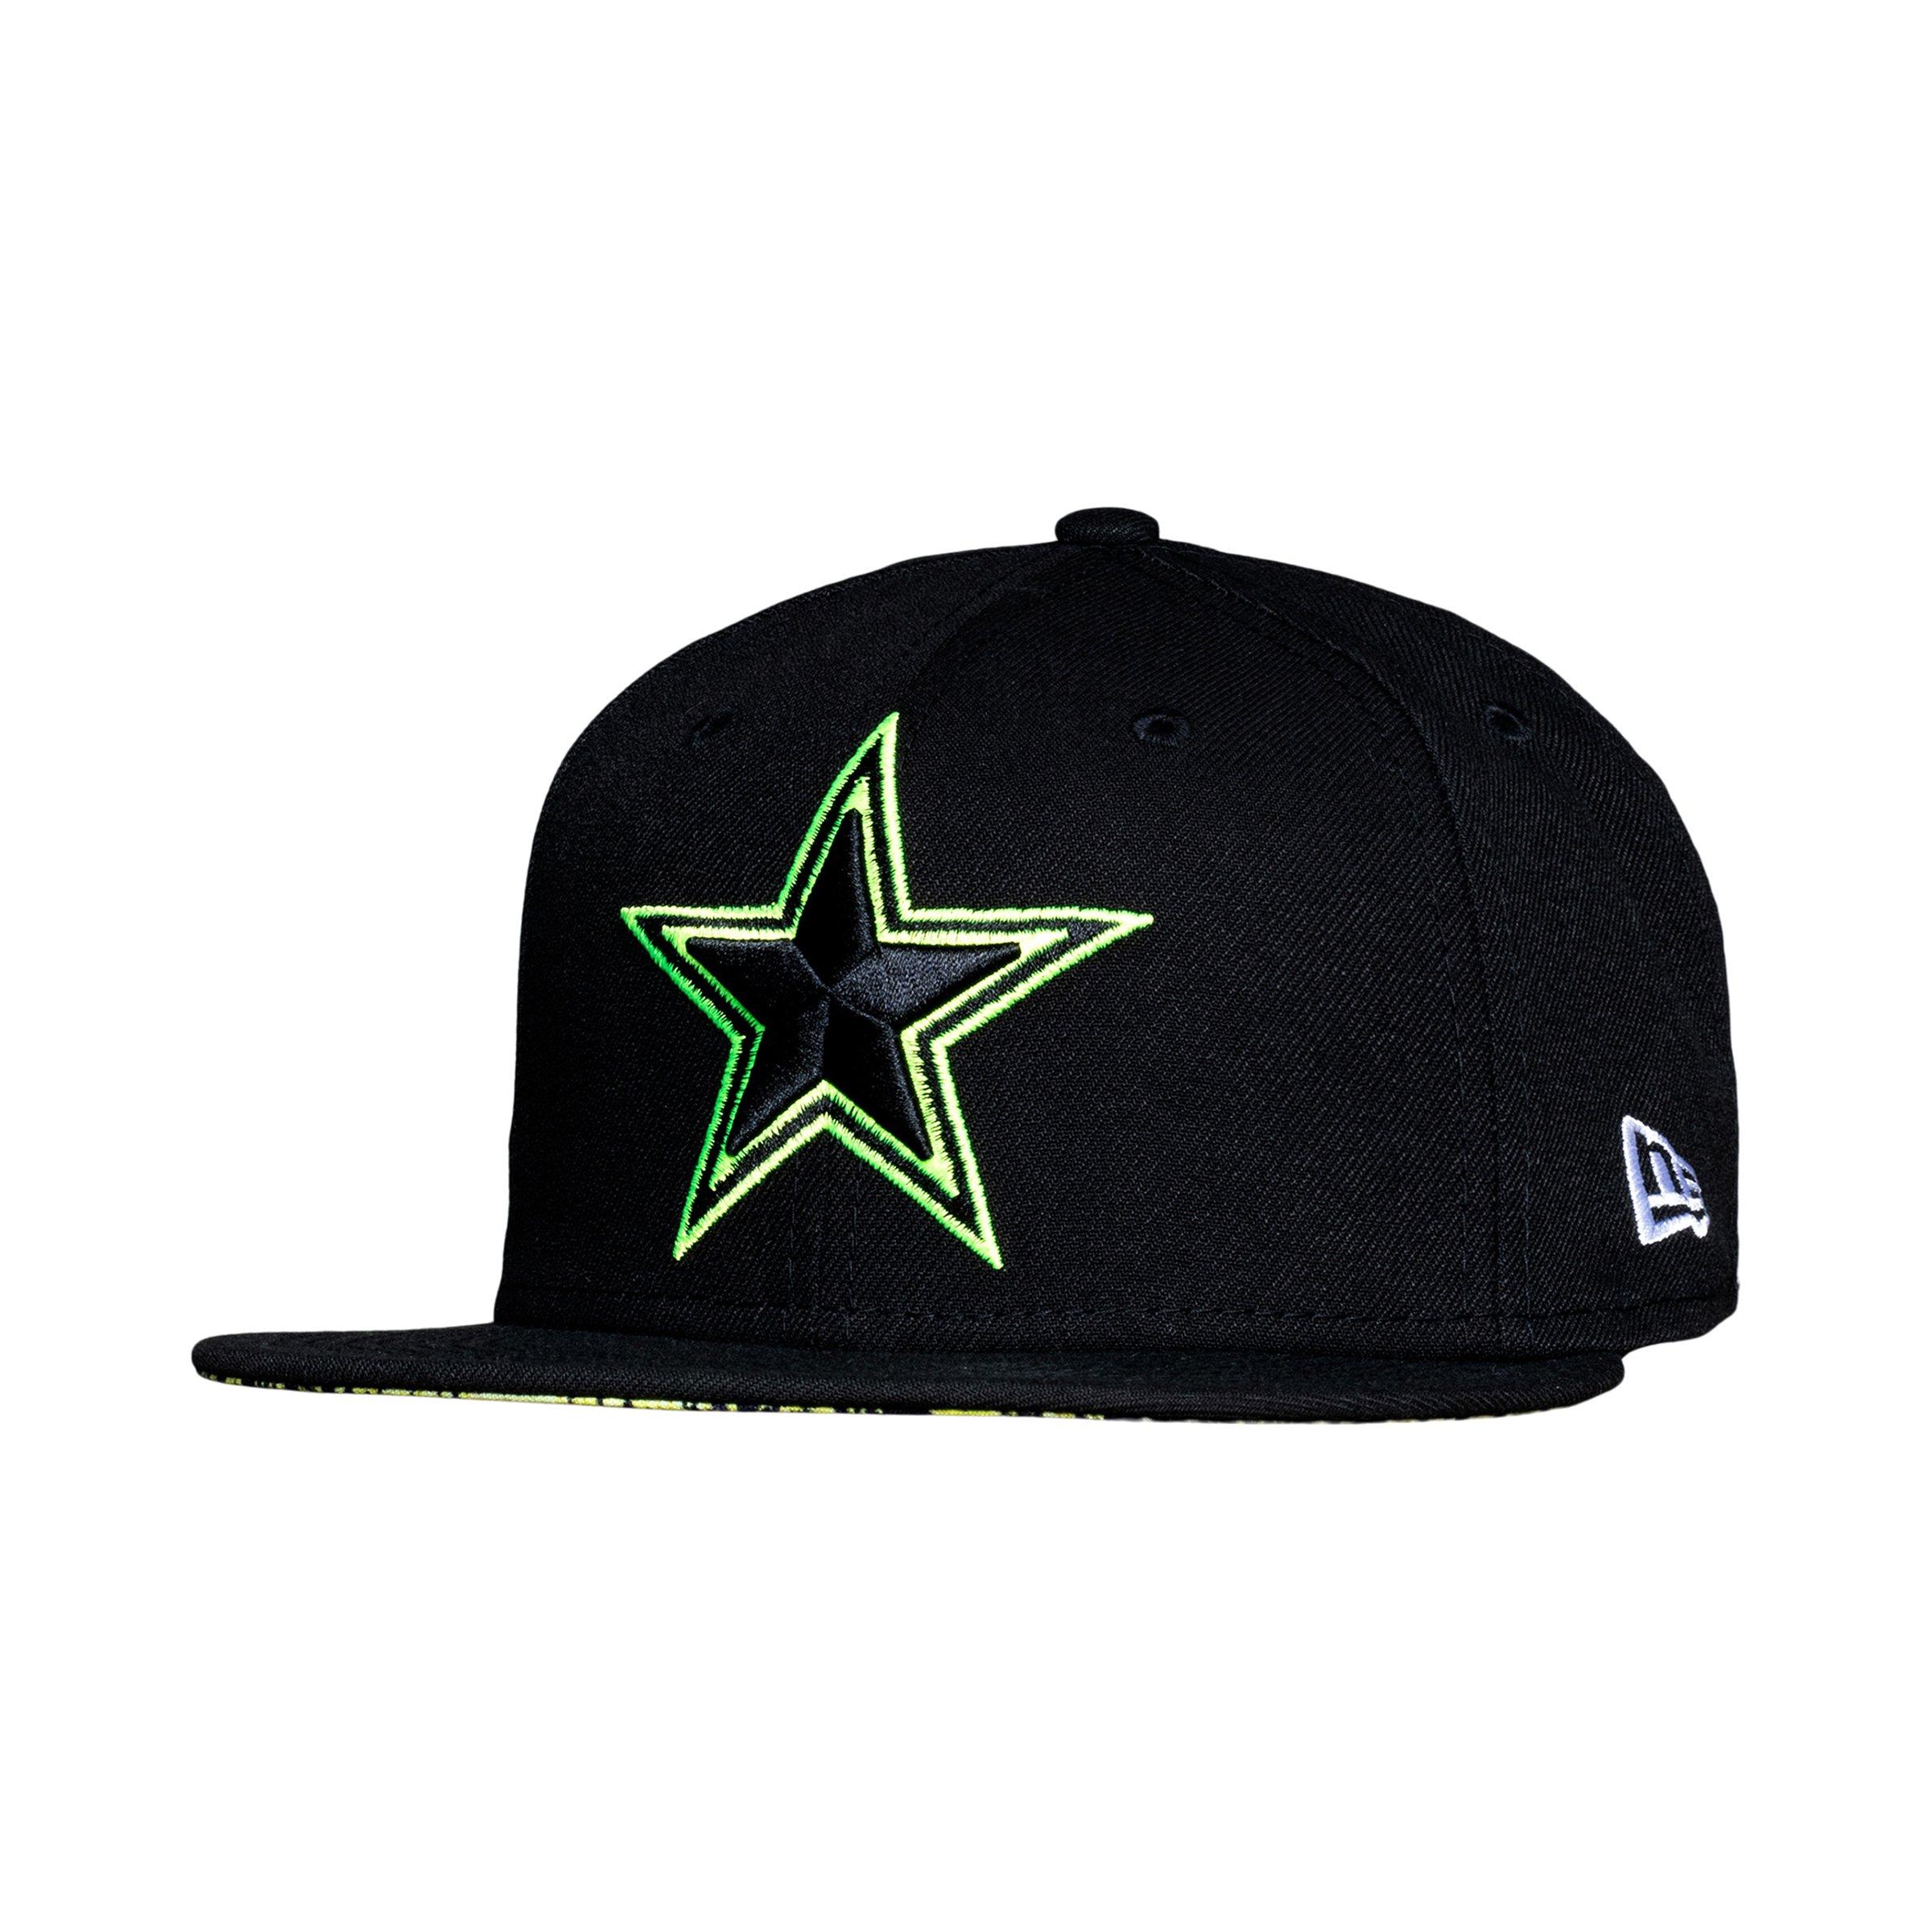 dallas cowboys green hat